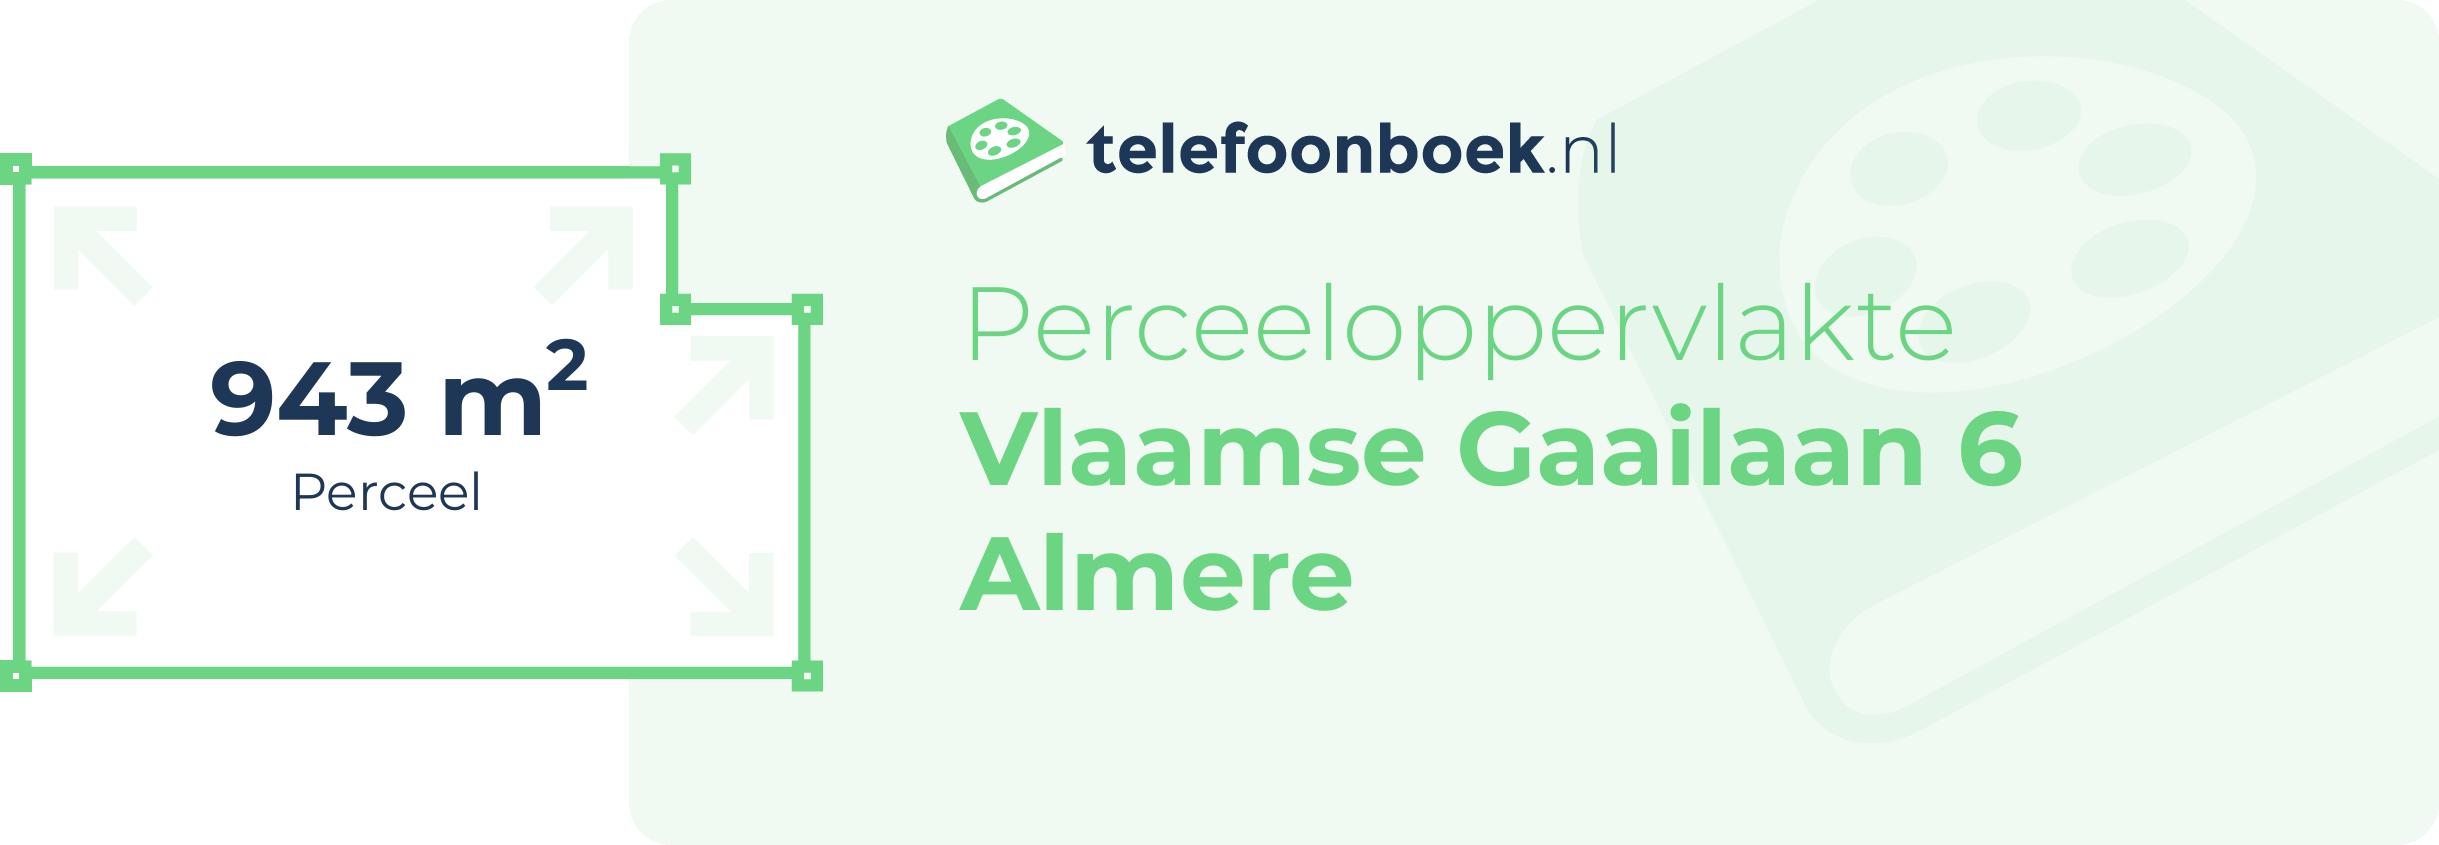 Perceeloppervlakte Vlaamse Gaailaan 6 Almere